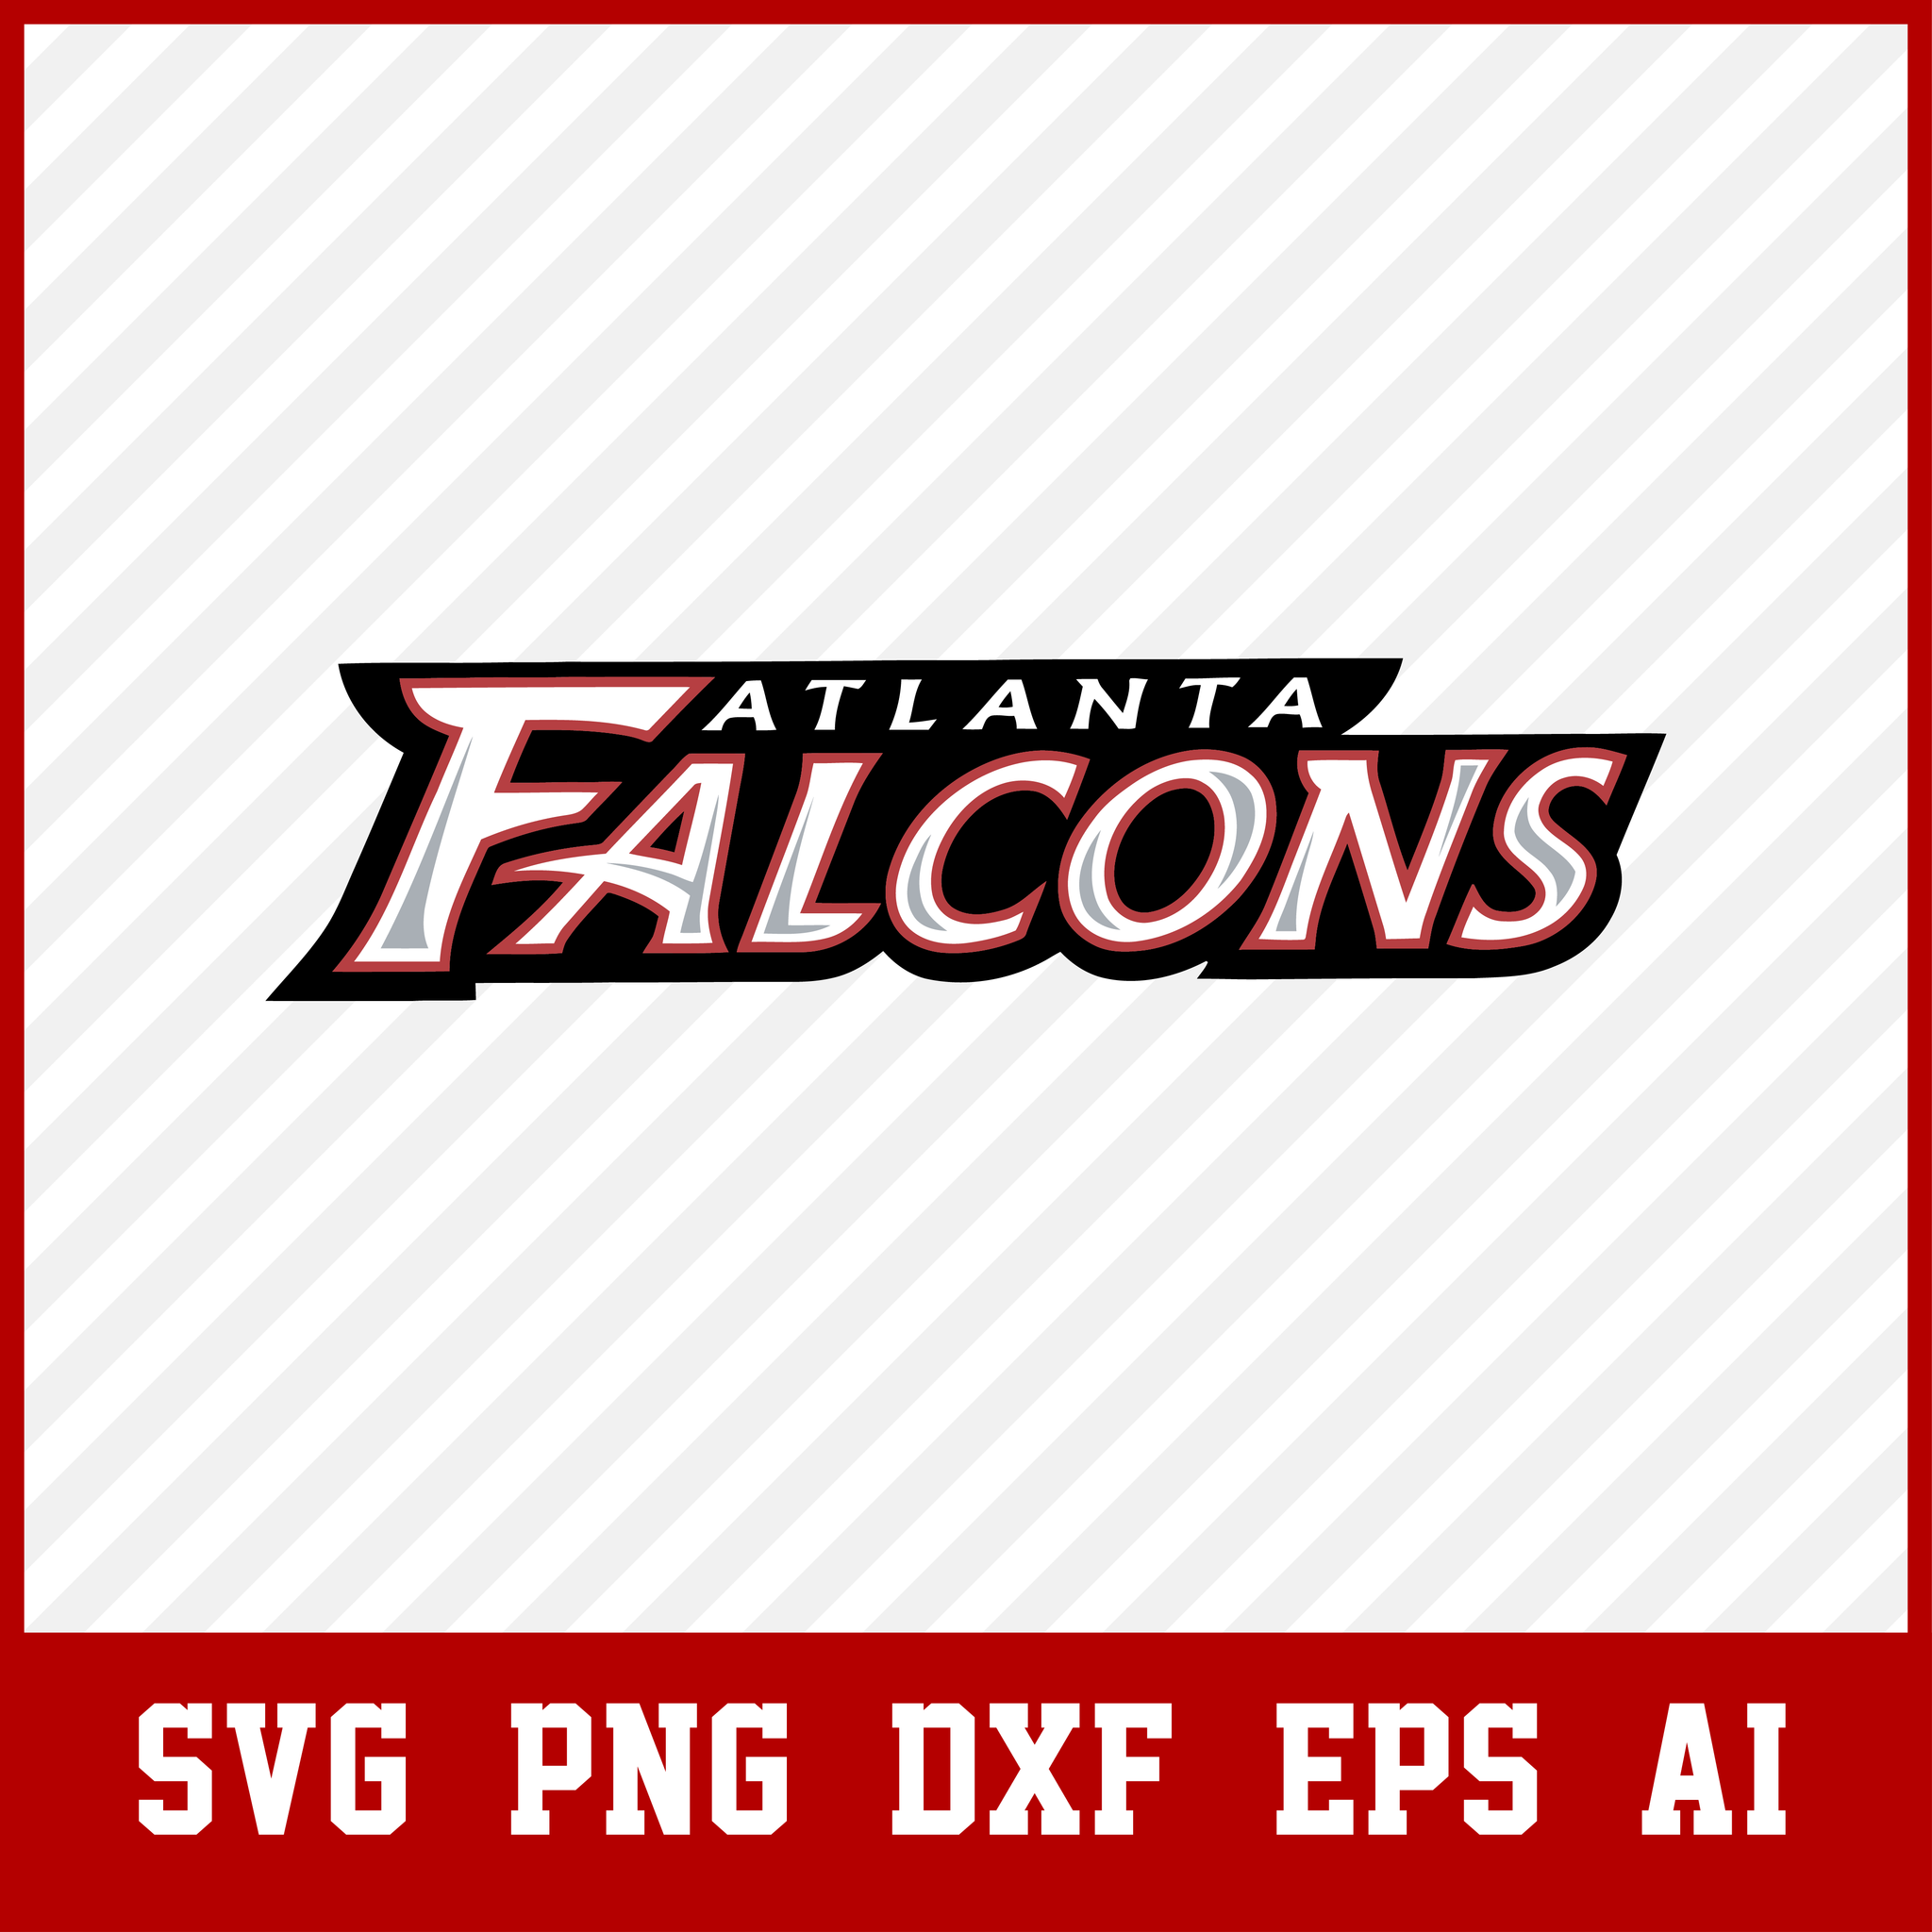 Falcons Svg, Atlanta Falcons Svg - Png, Atlanta Falcons Svg Files For Cricut, Atlanta Falcons Logo Svg, Atlanta Falcons Cut File, NFL Svg